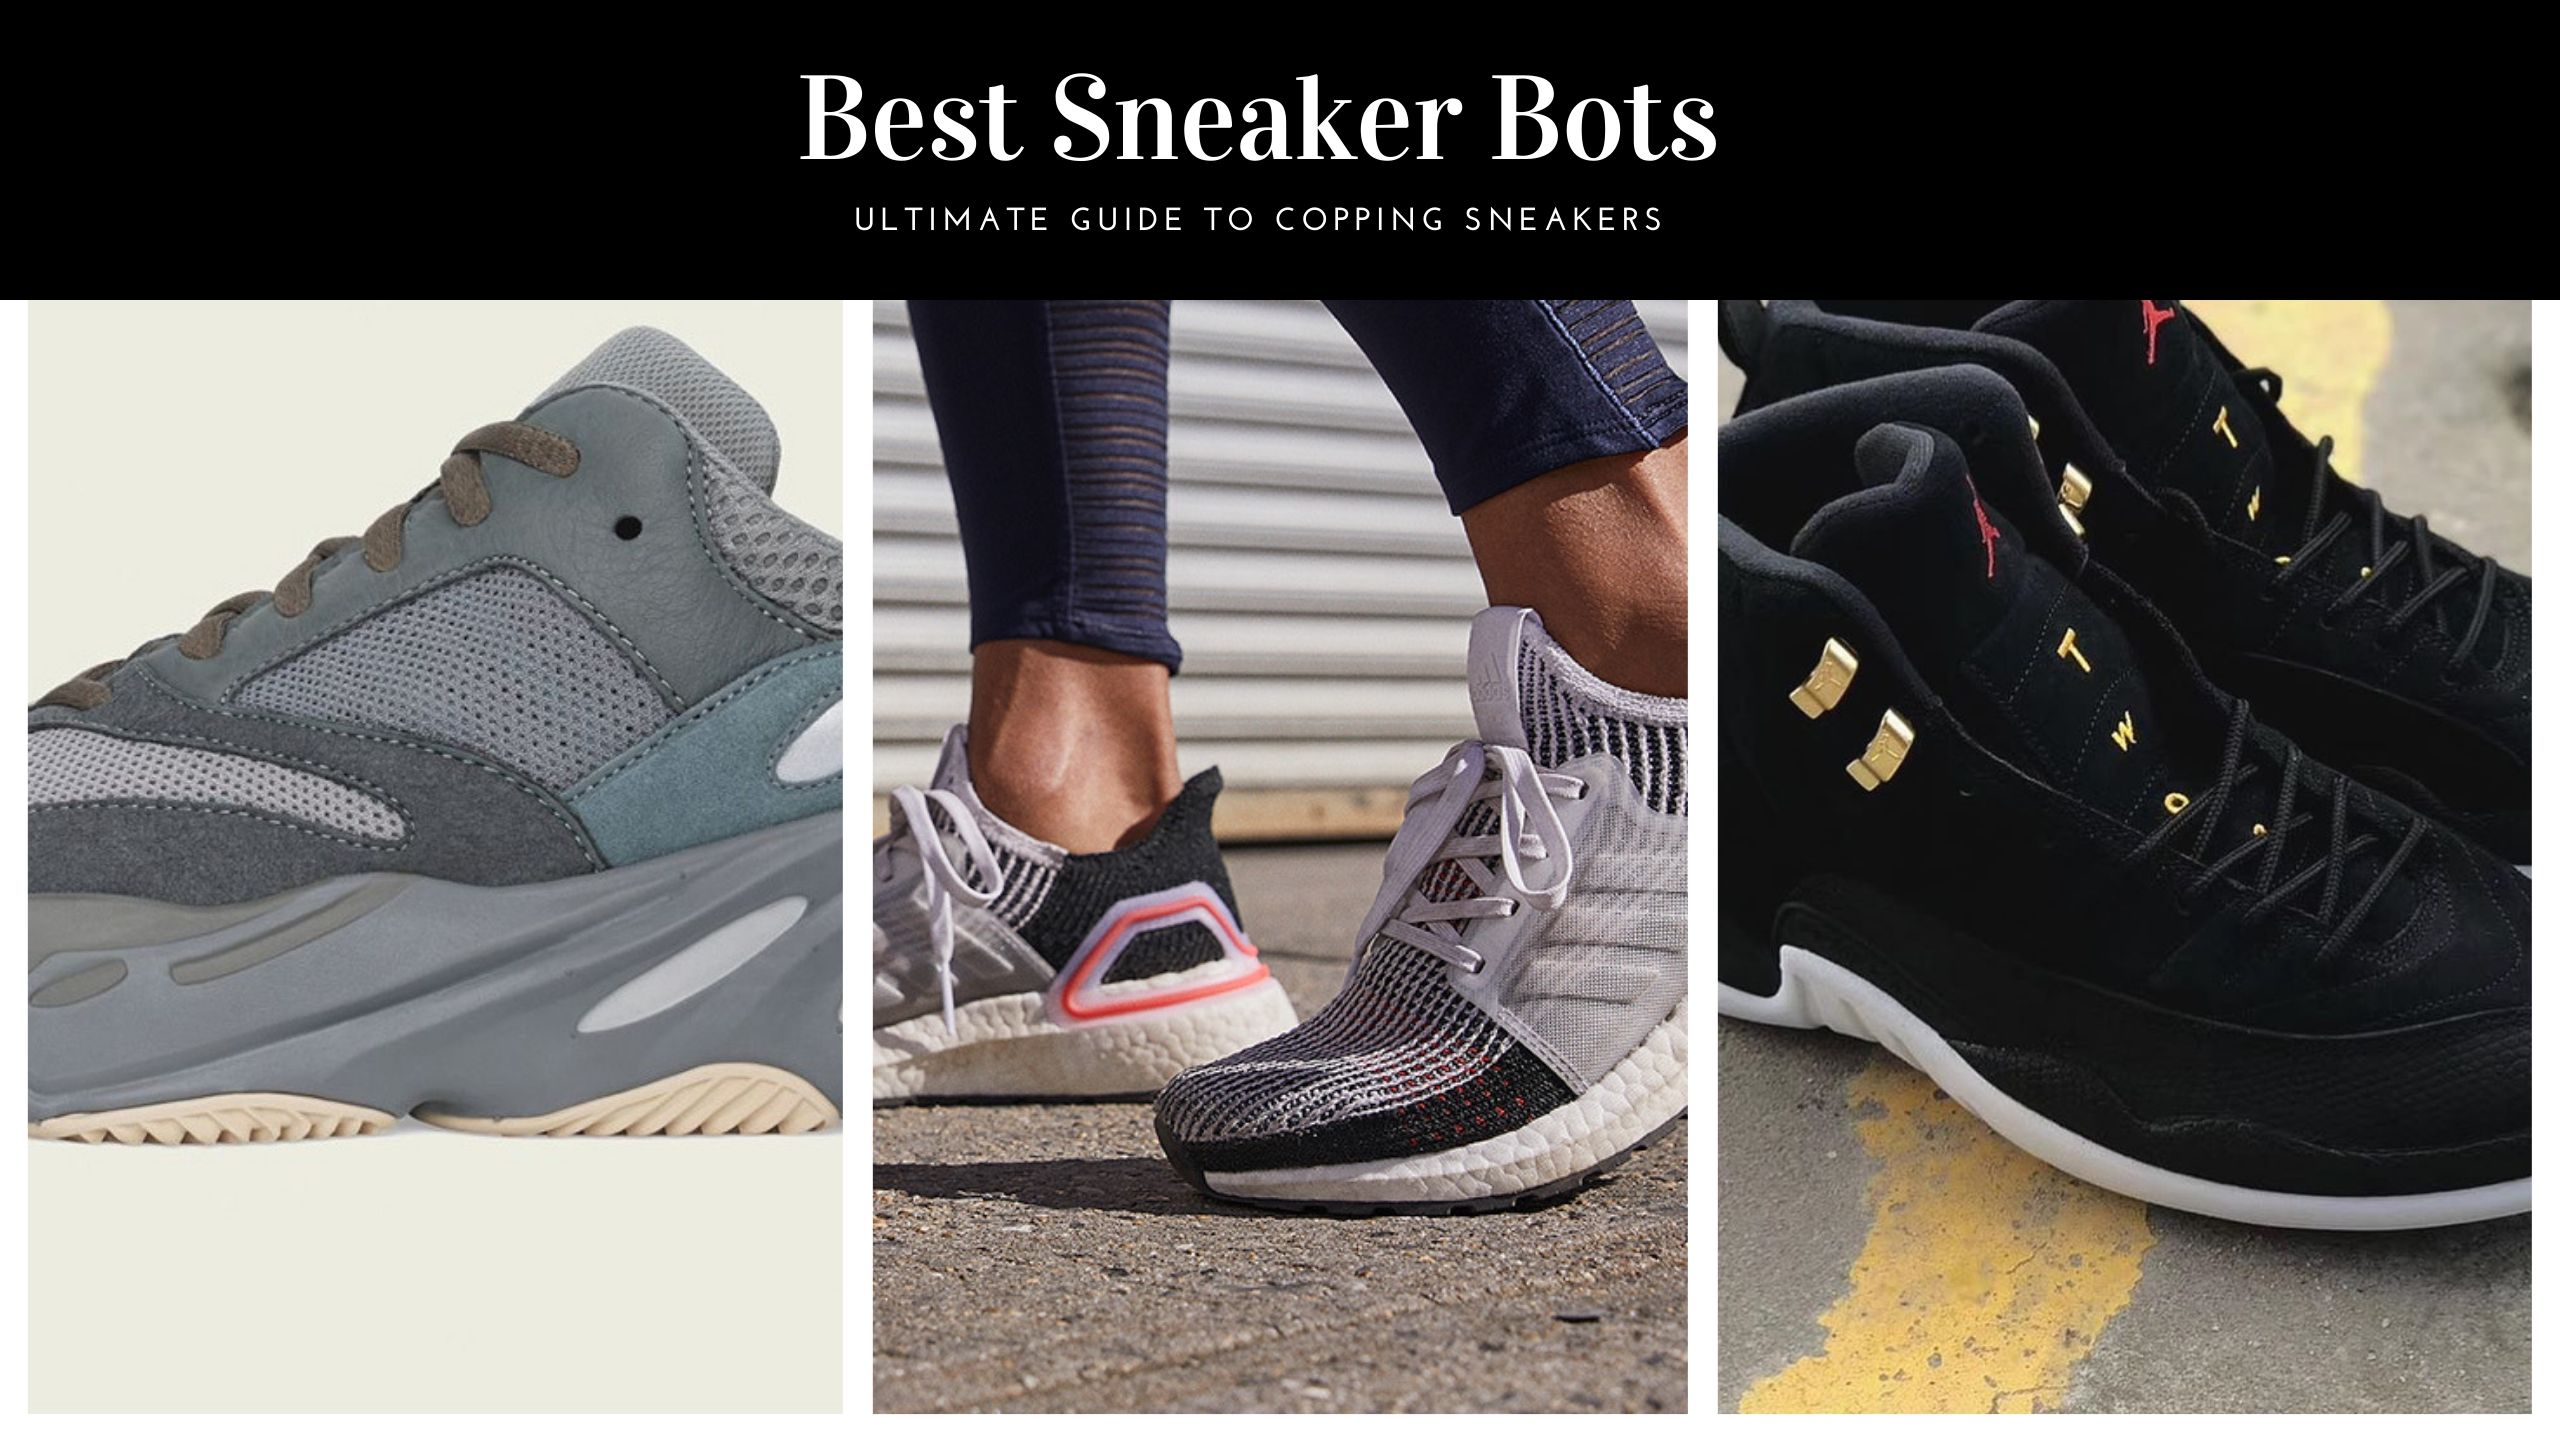 7 Best Sneaker Bots 2021